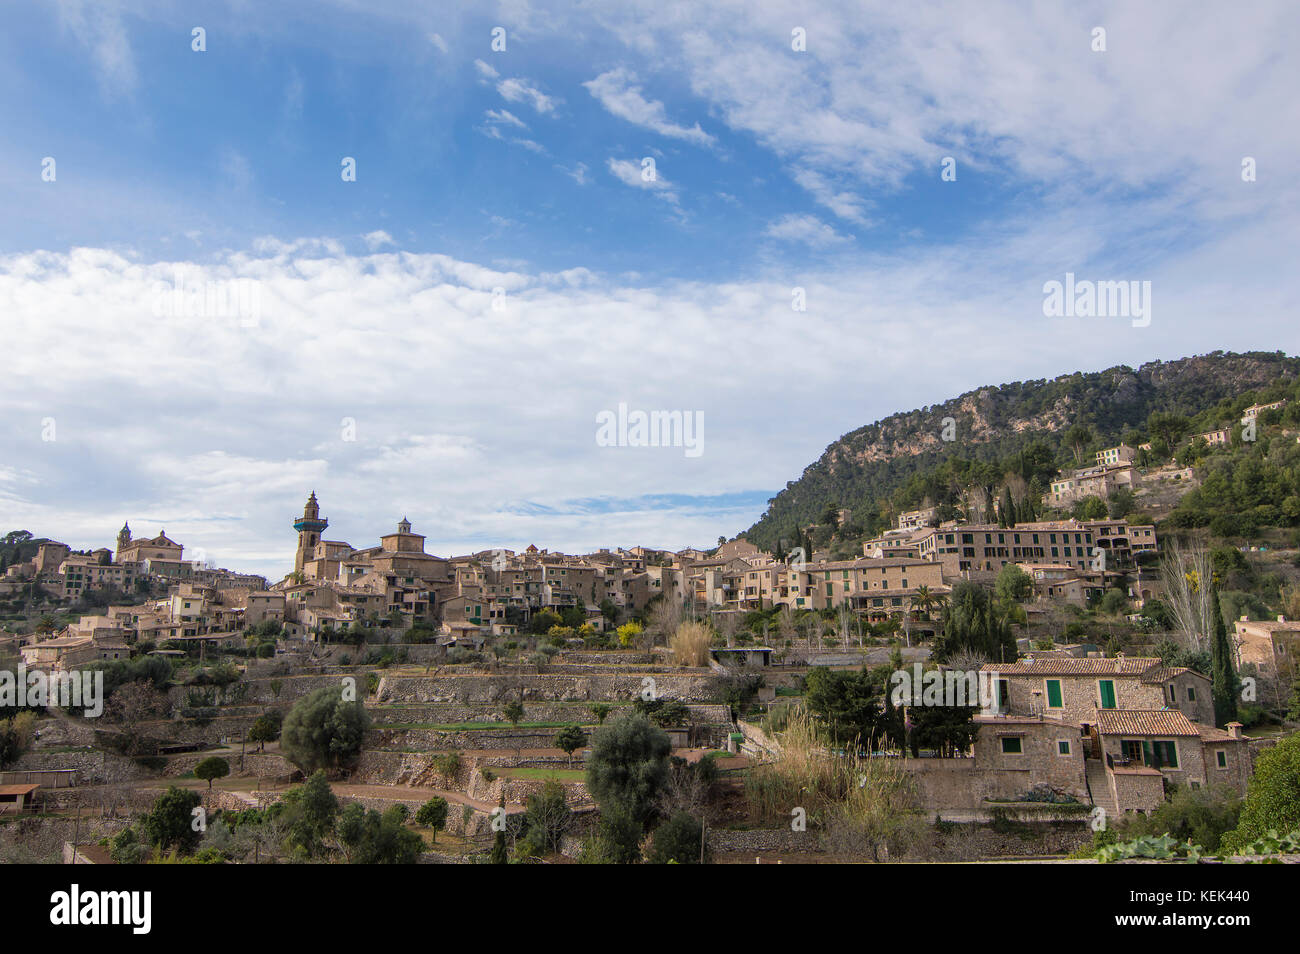 Deia, magnifique village de montagne de Majorque. Une partie merveilleuse de la montagne de traumuntana Banque D'Images